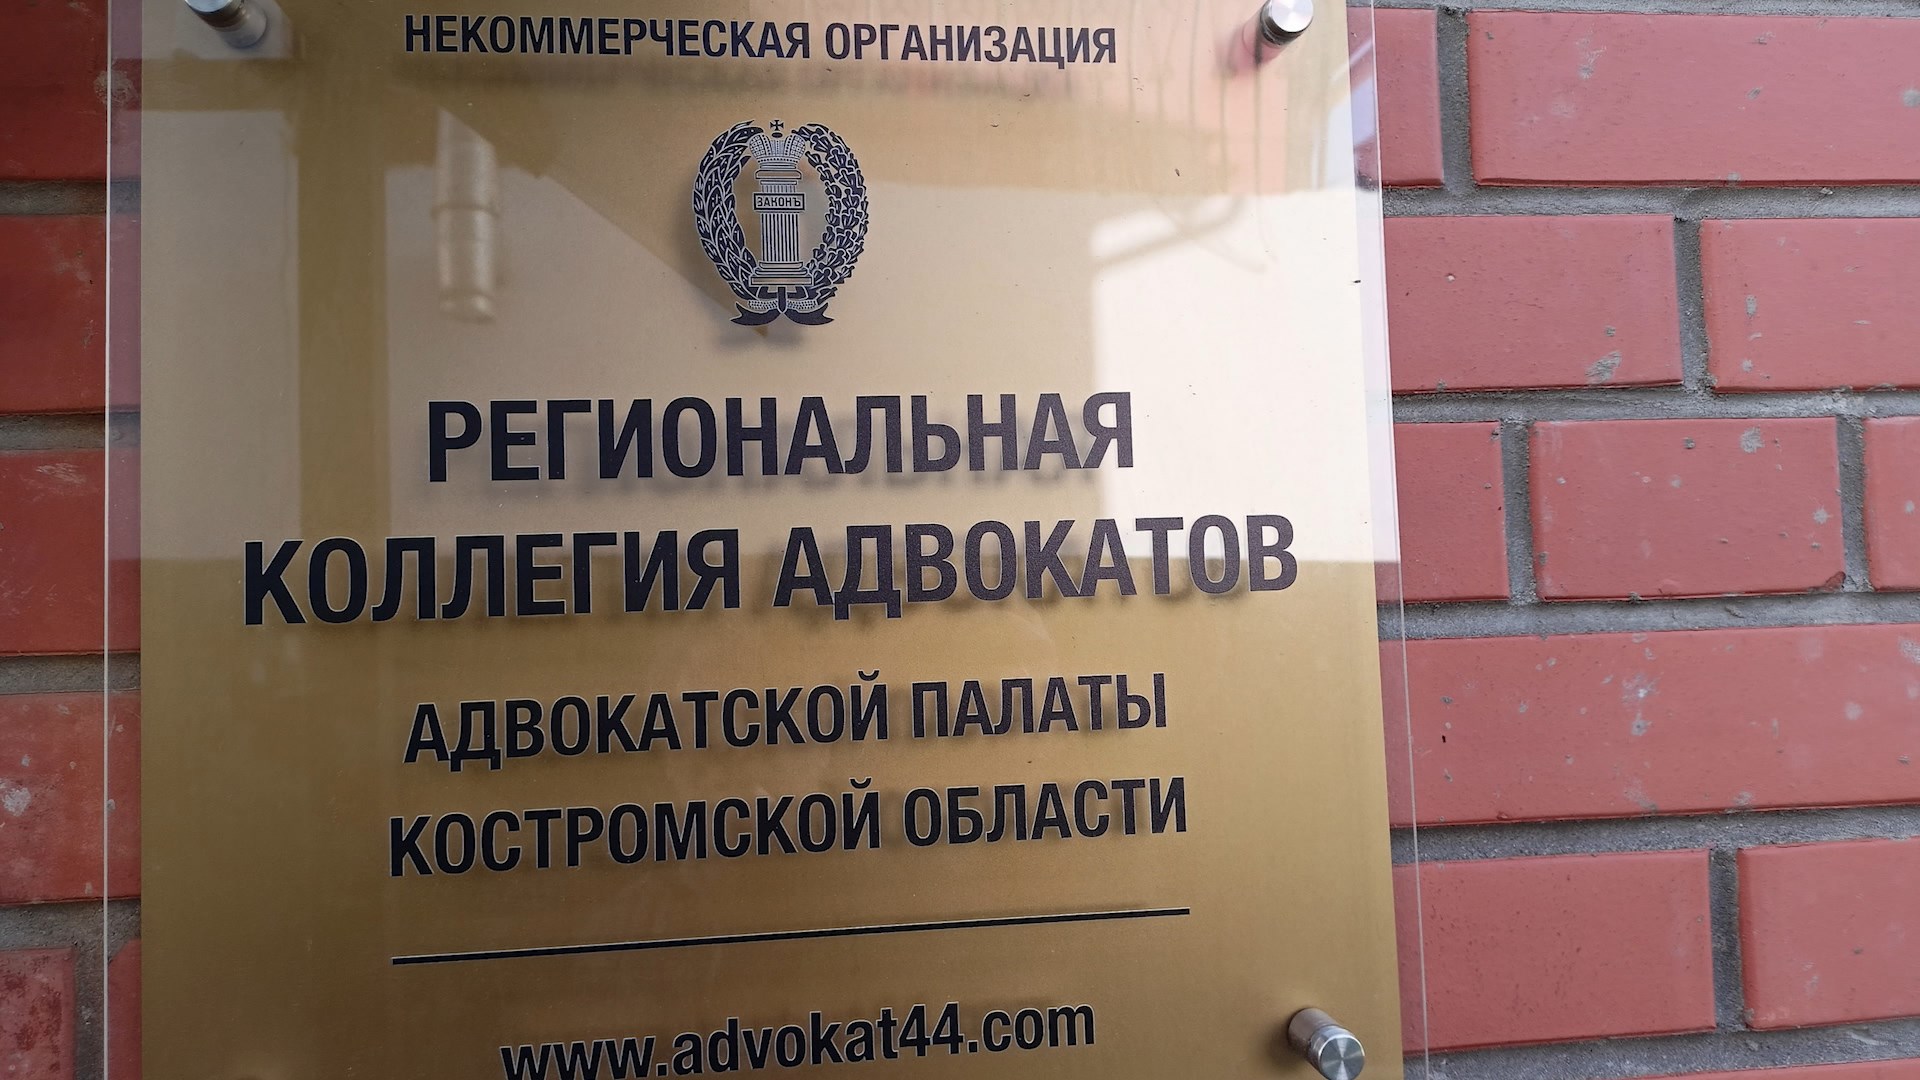 Костромичи могут получить бесплатную юридическую помощь у адвокатов Региональной коллегии